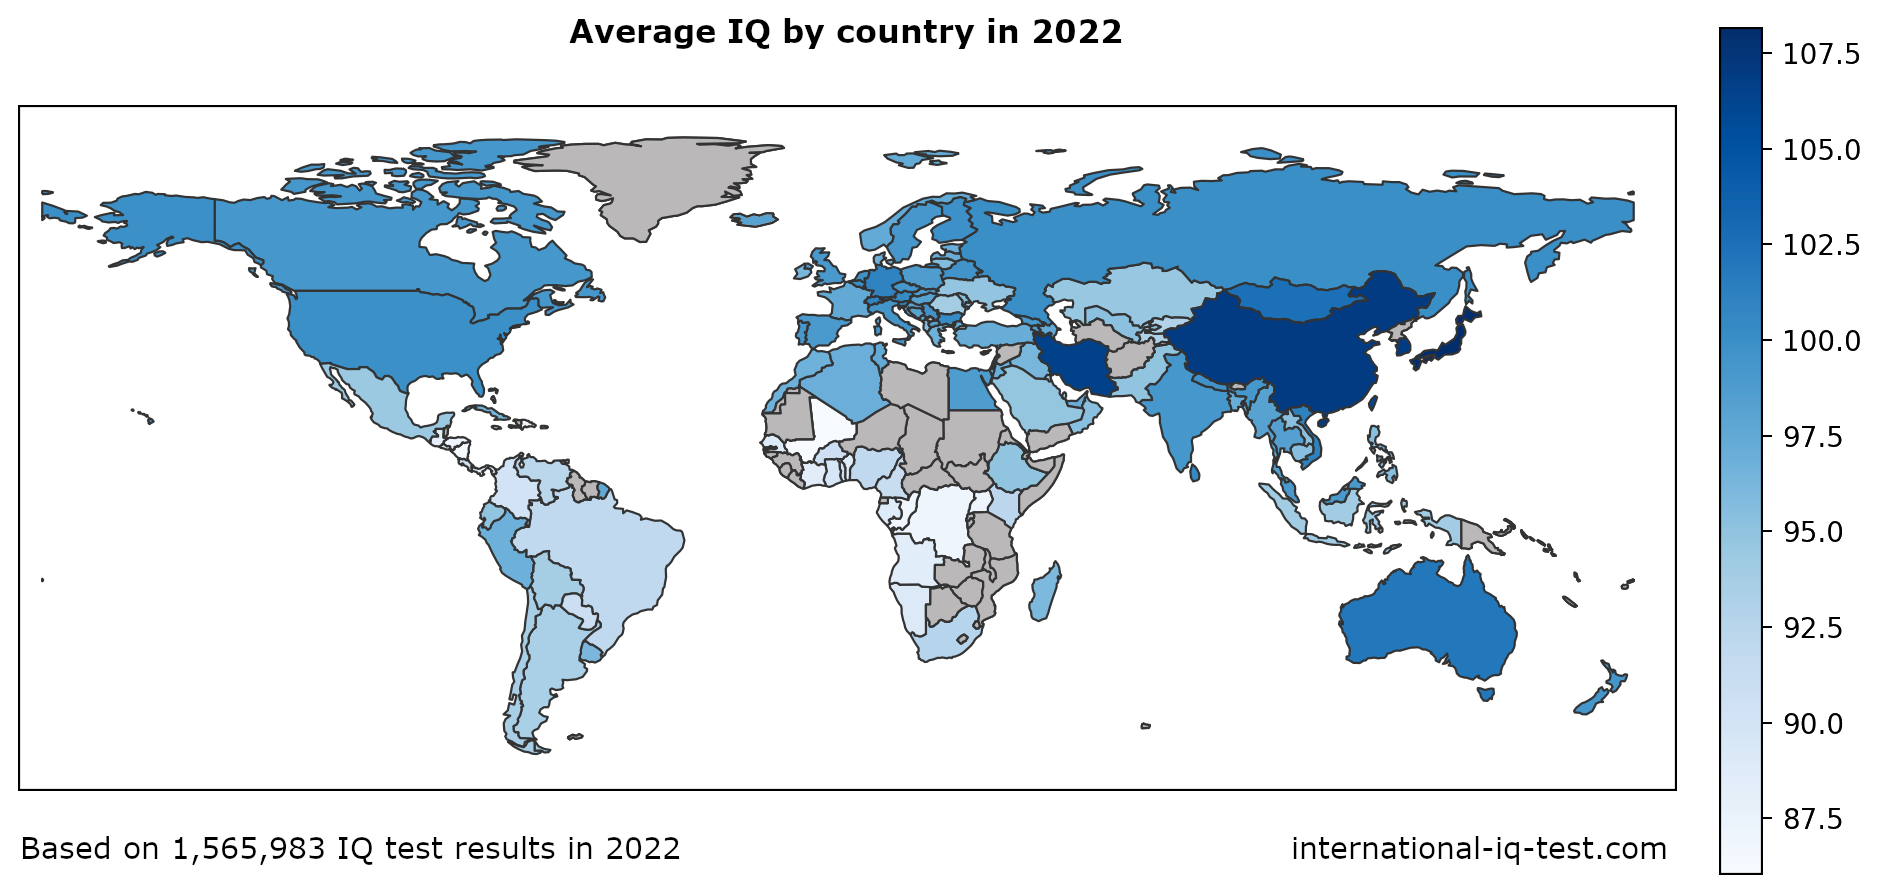 Harta lumii care arată IQ-ul mediu pe țară în 2022, folosind nuanțe de albastru de la cel mai deschis la cel mai închis